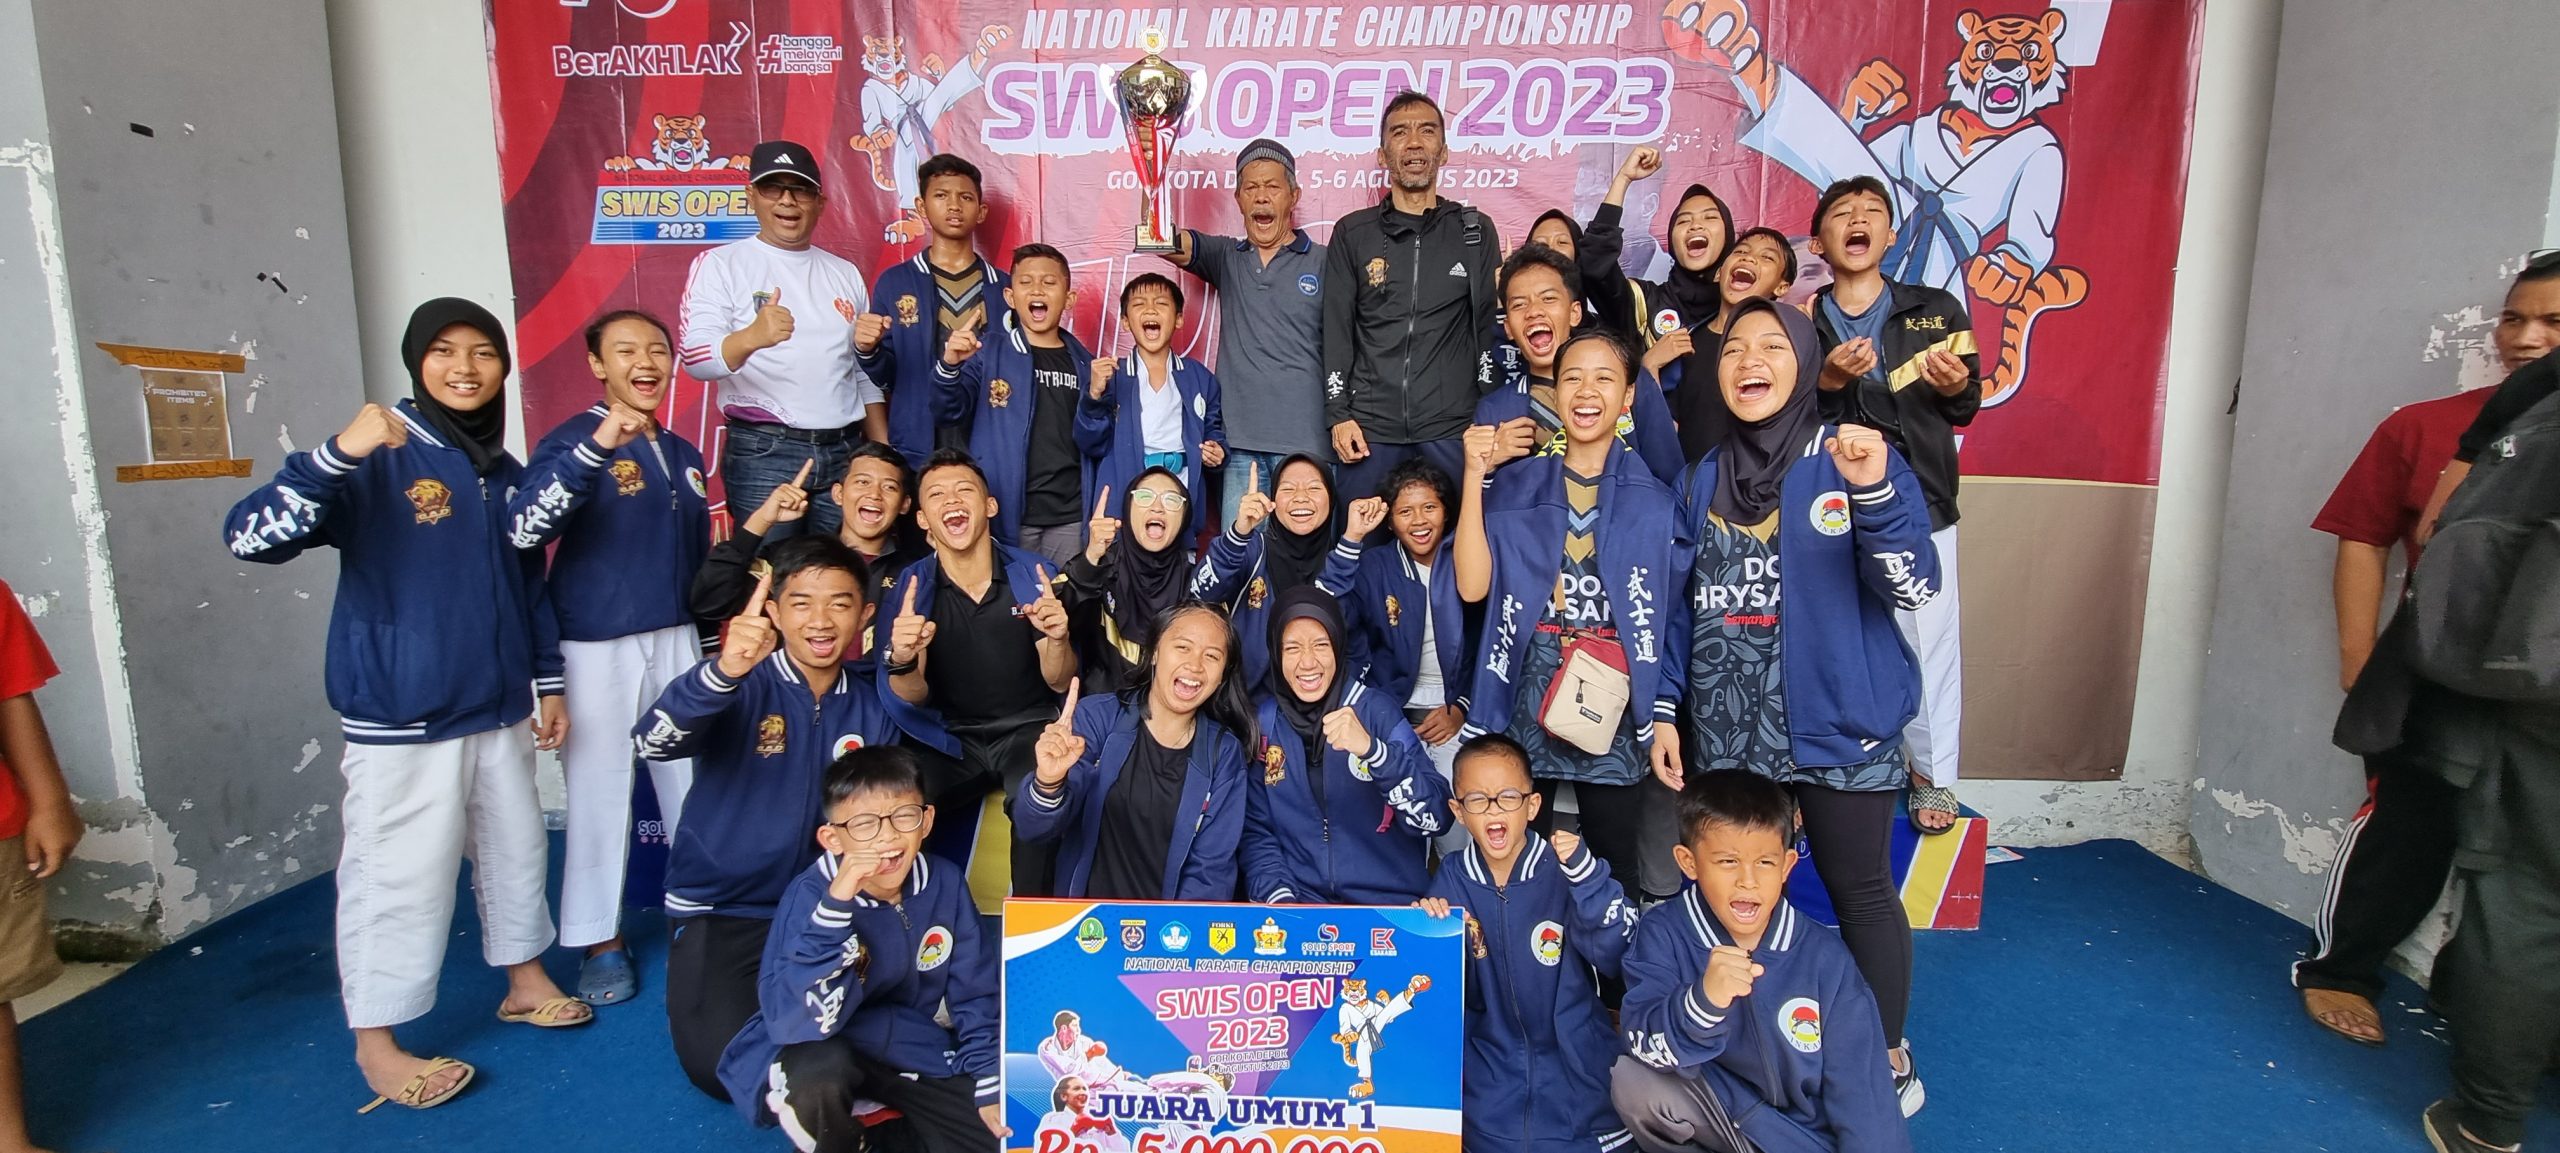 GAD Juara Umum Swis Open National Karate Championship 2023